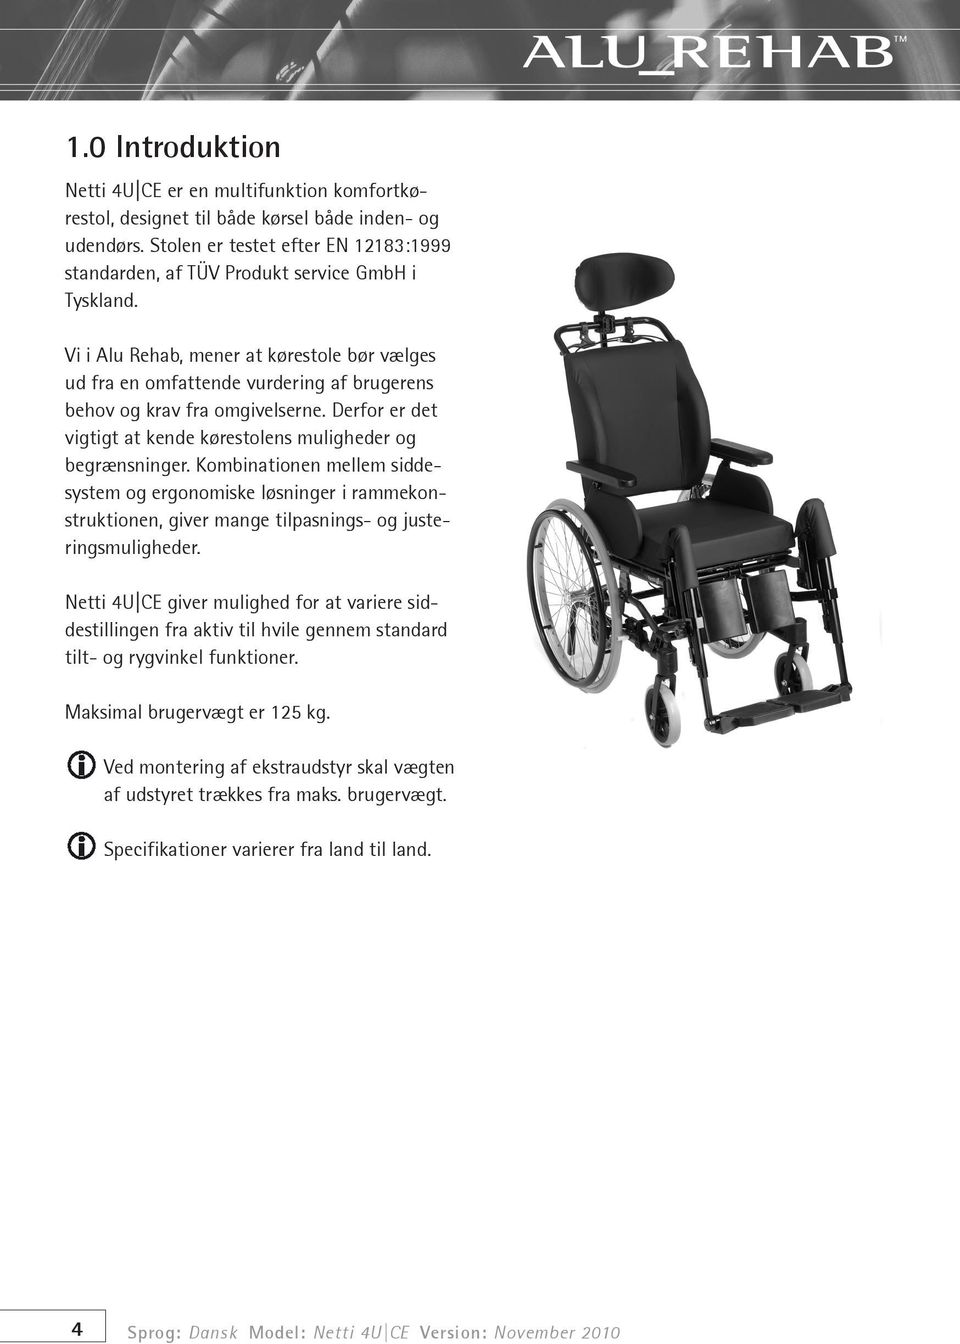 Vi i Alu Rehab, mener at kørestole bør vælges ud fra en omfattende vurdering af brugerens behov og krav fra omgivelserne. Derfor er det vigtigt at kende kørestolens muligheder og begrænsninger.